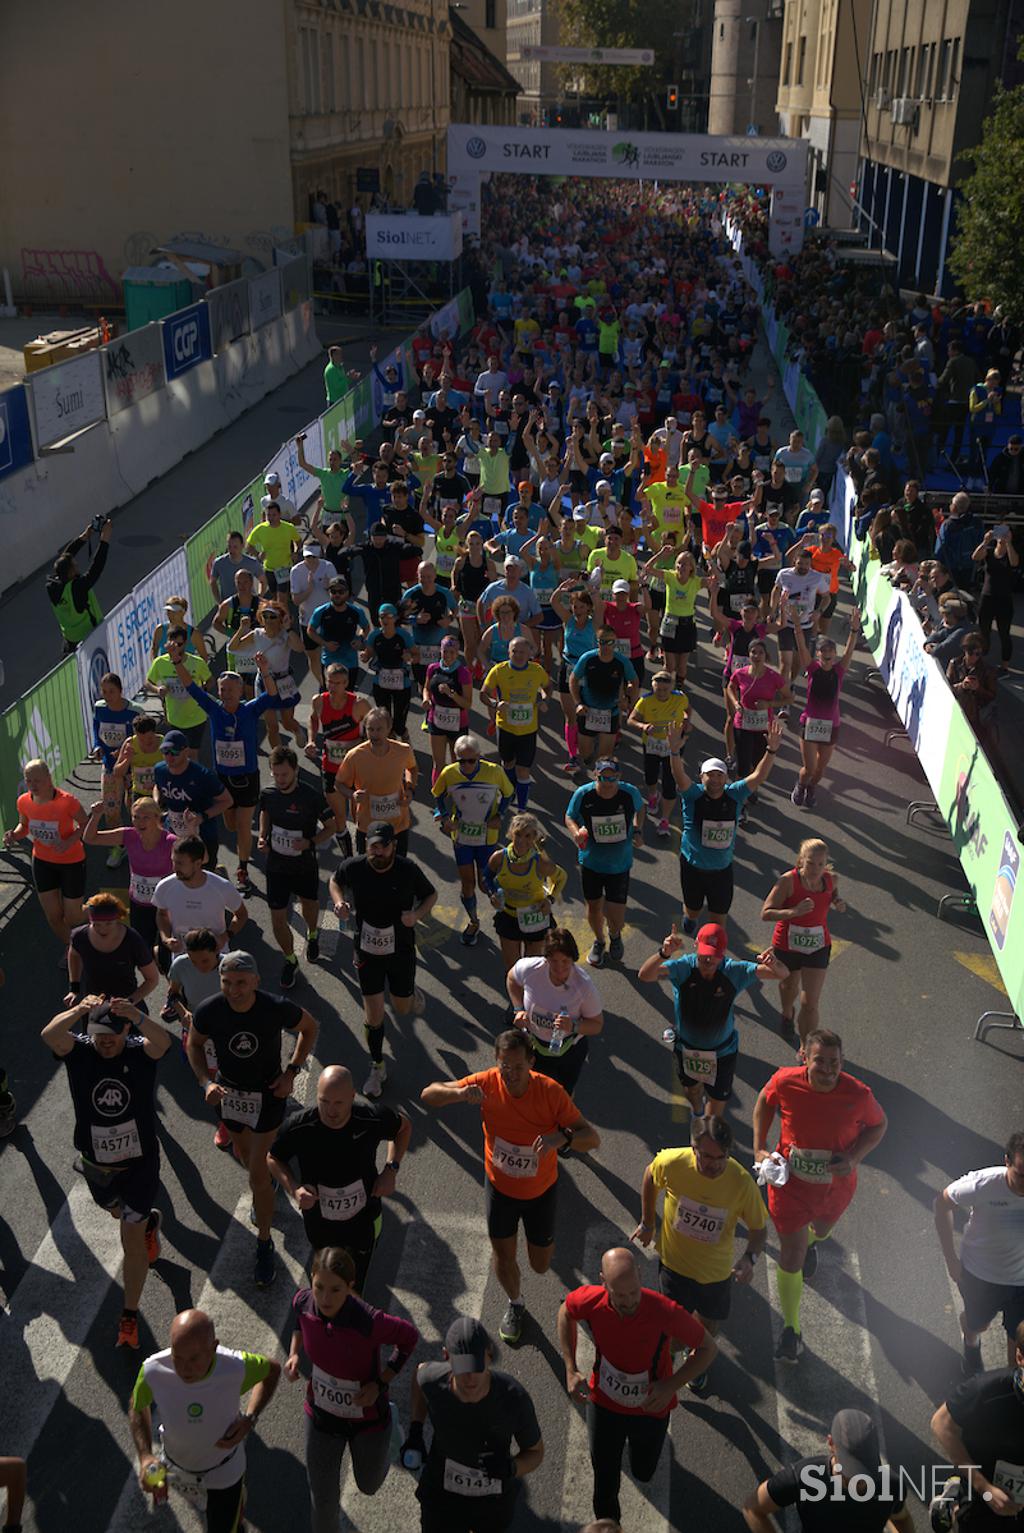 24. Ljubljanskega maraton